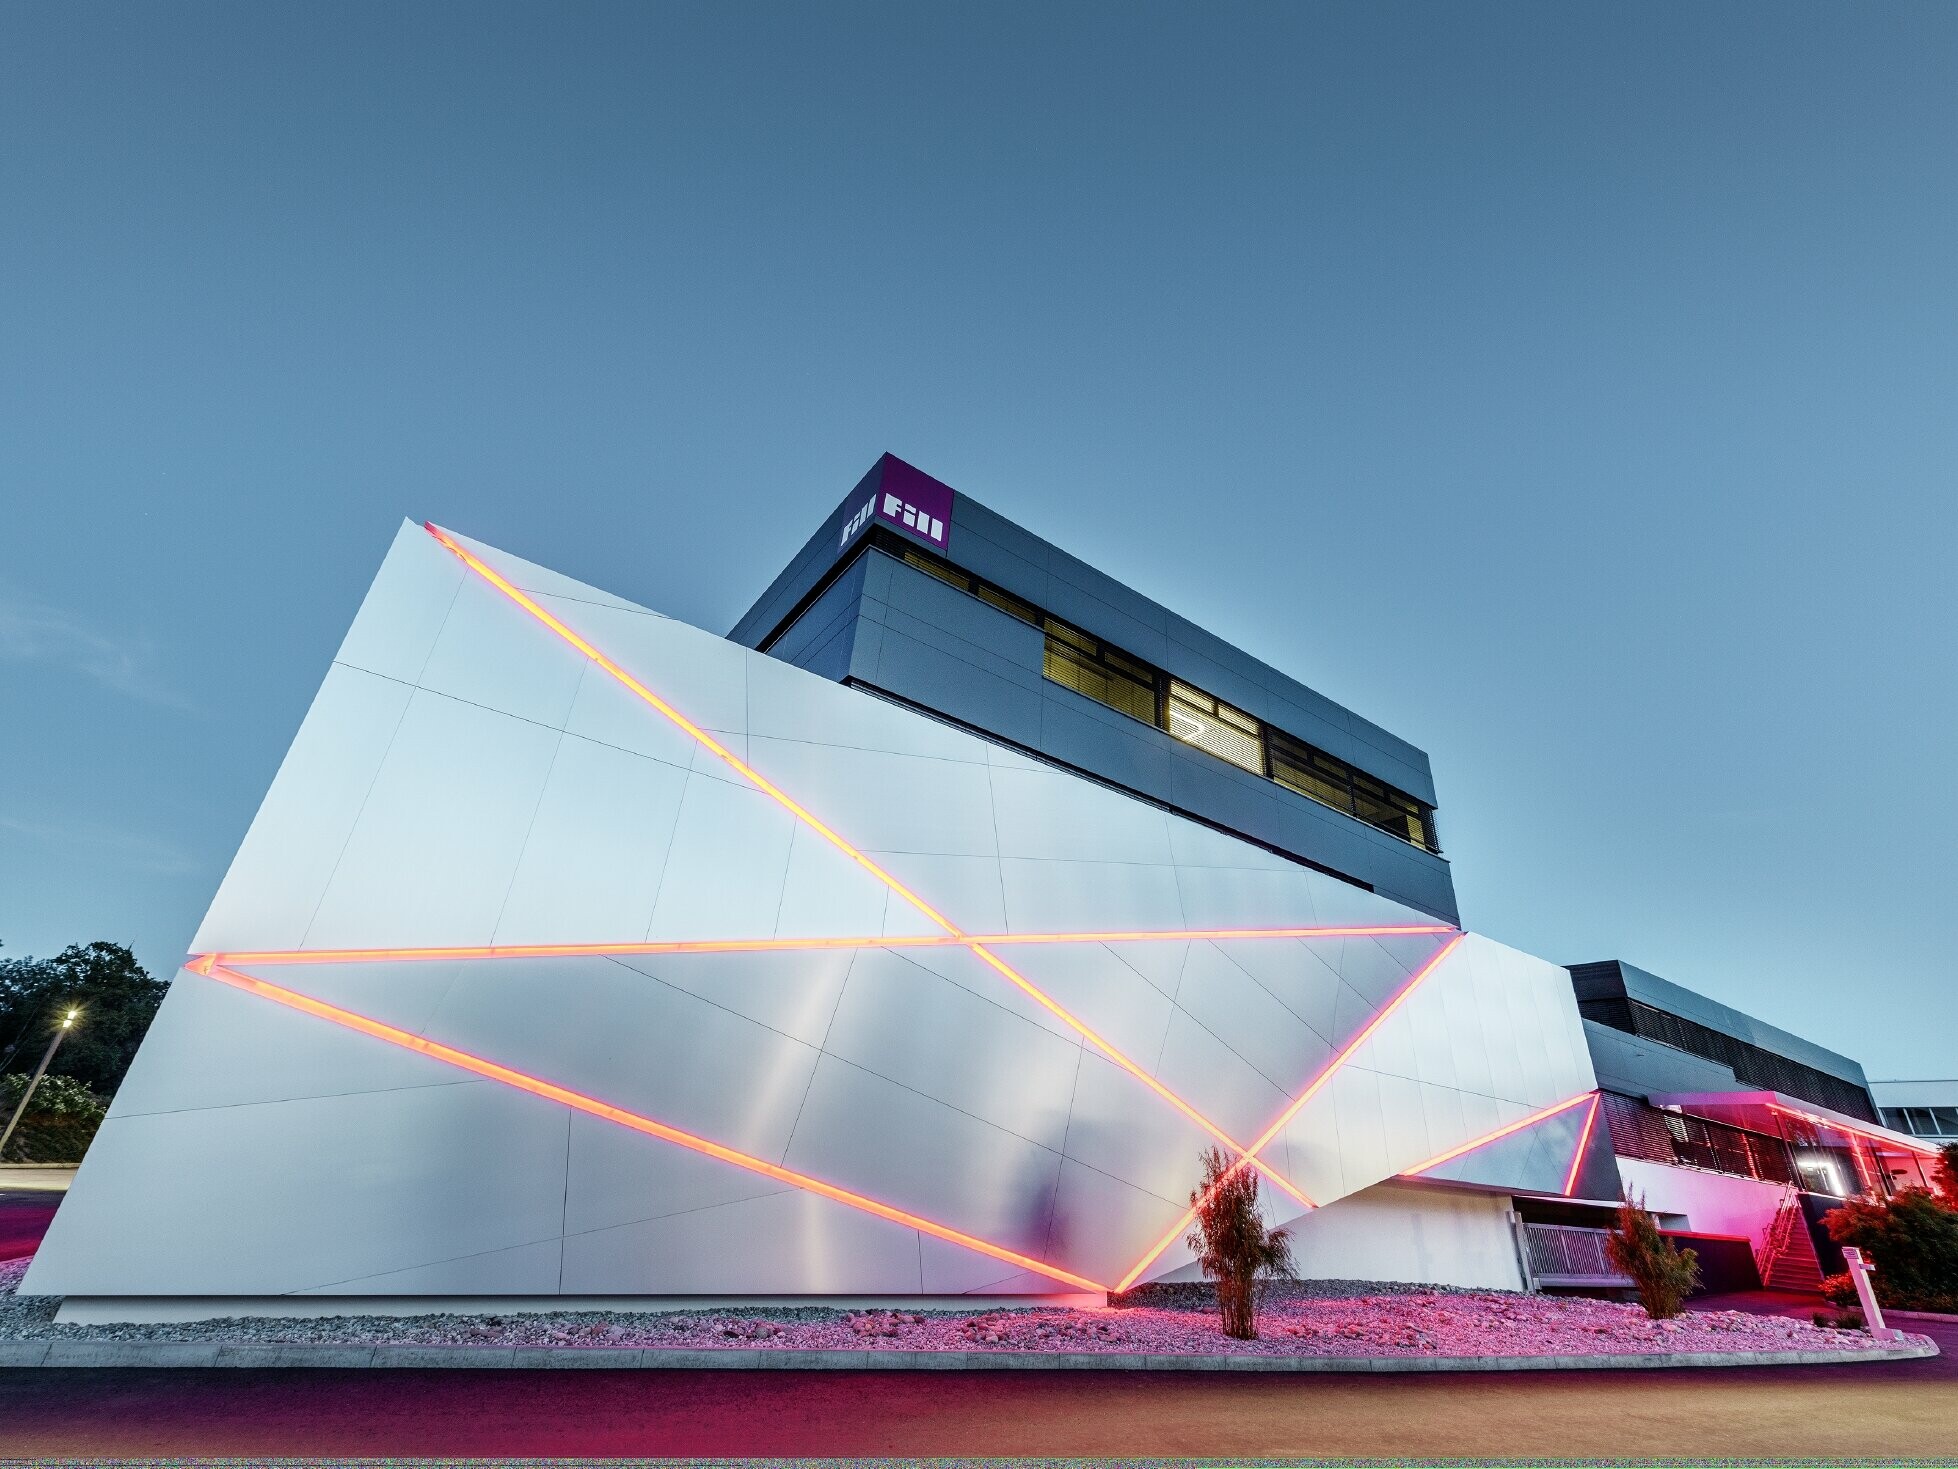 Fill företagsbyggnad med en futuristisk fasad av samverkansplattor i borstad aluminium och bakgrundsbelysta fogar